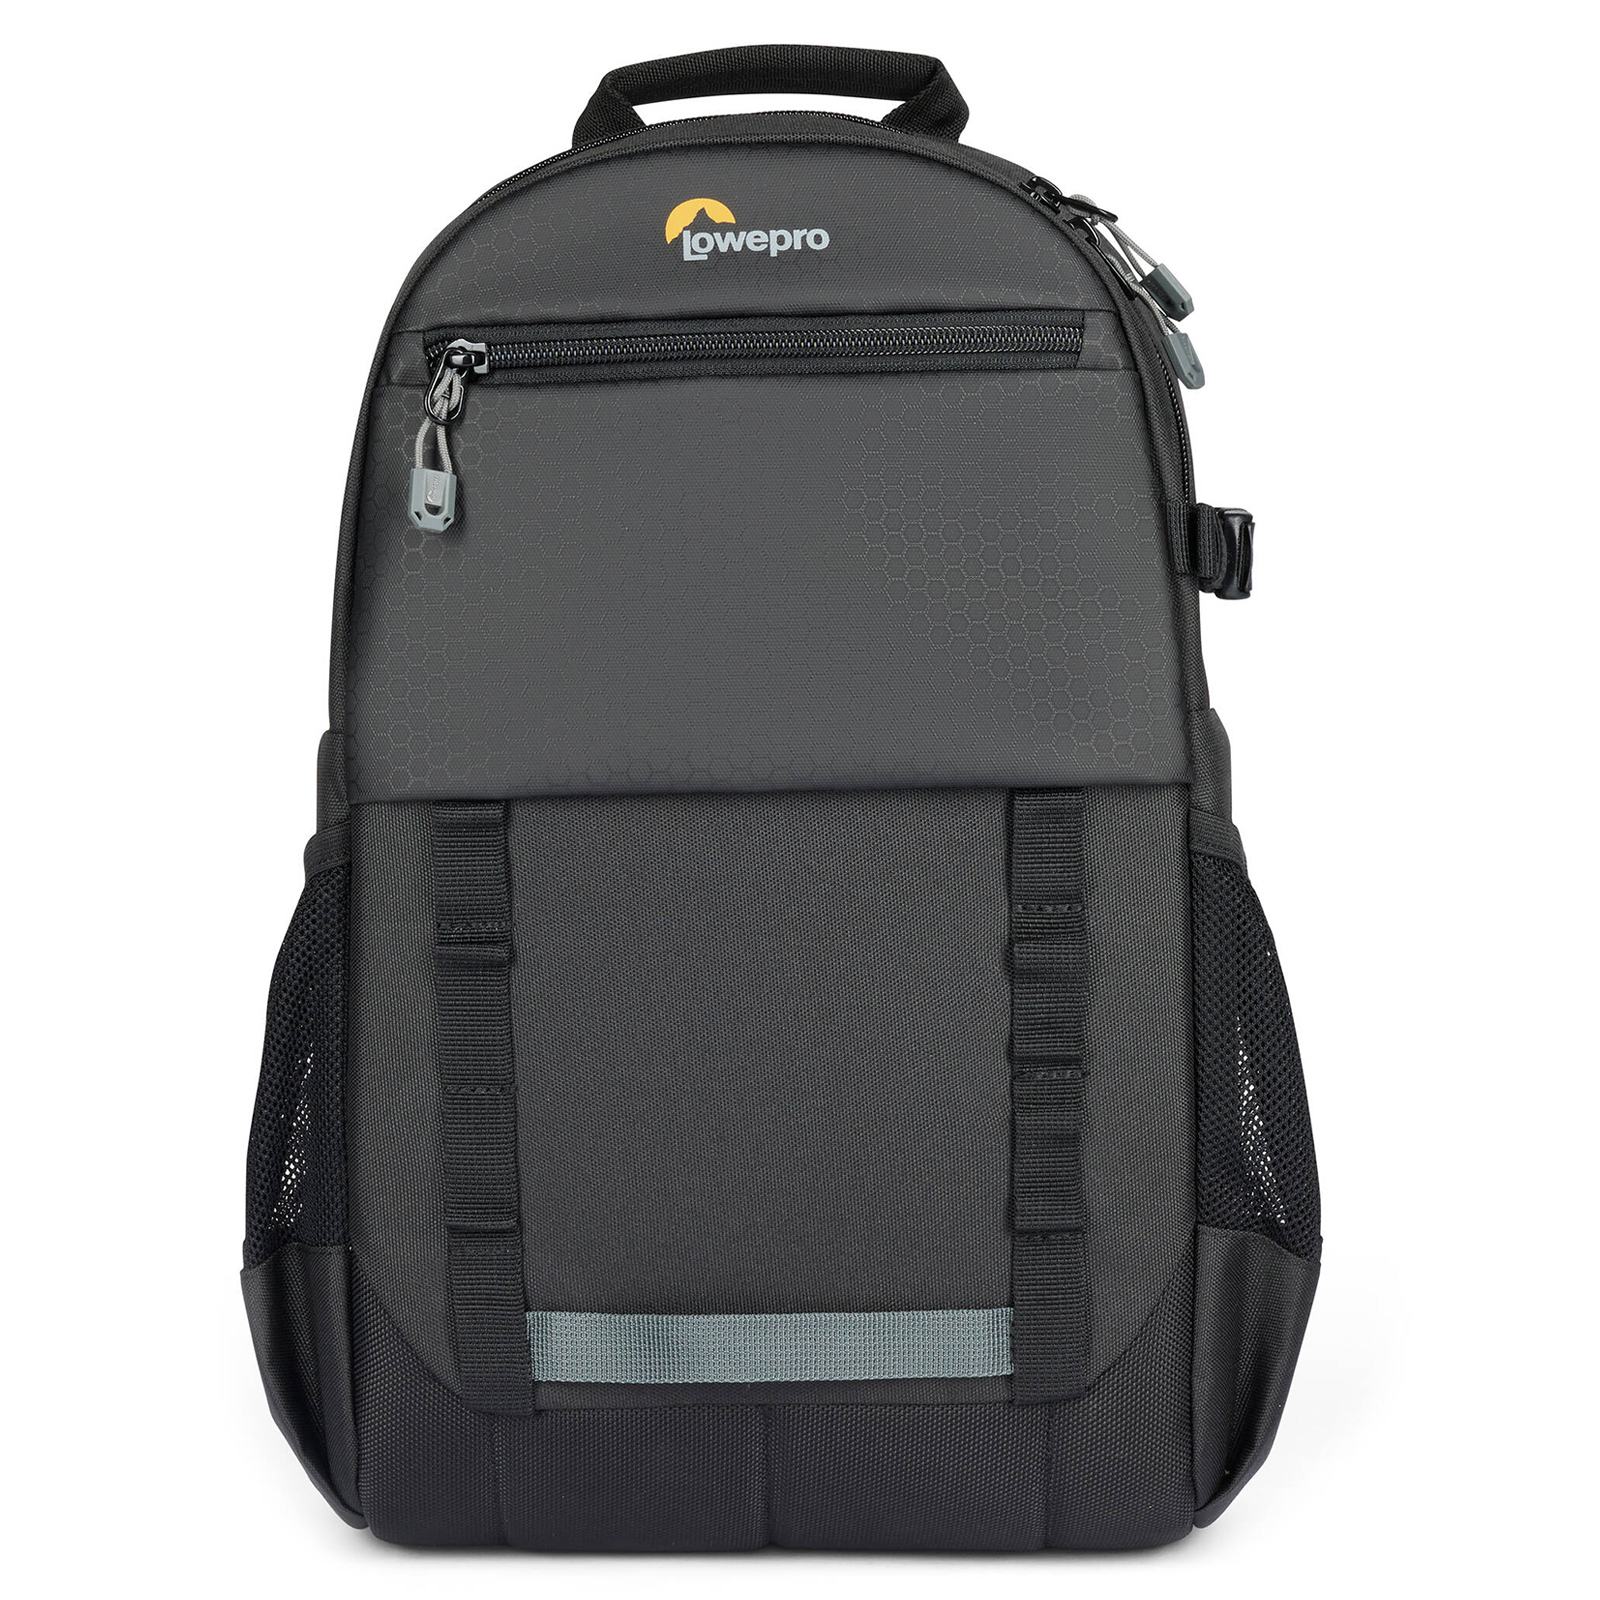 Image of Lowepro Adventura BP 150 III Backpack - Black